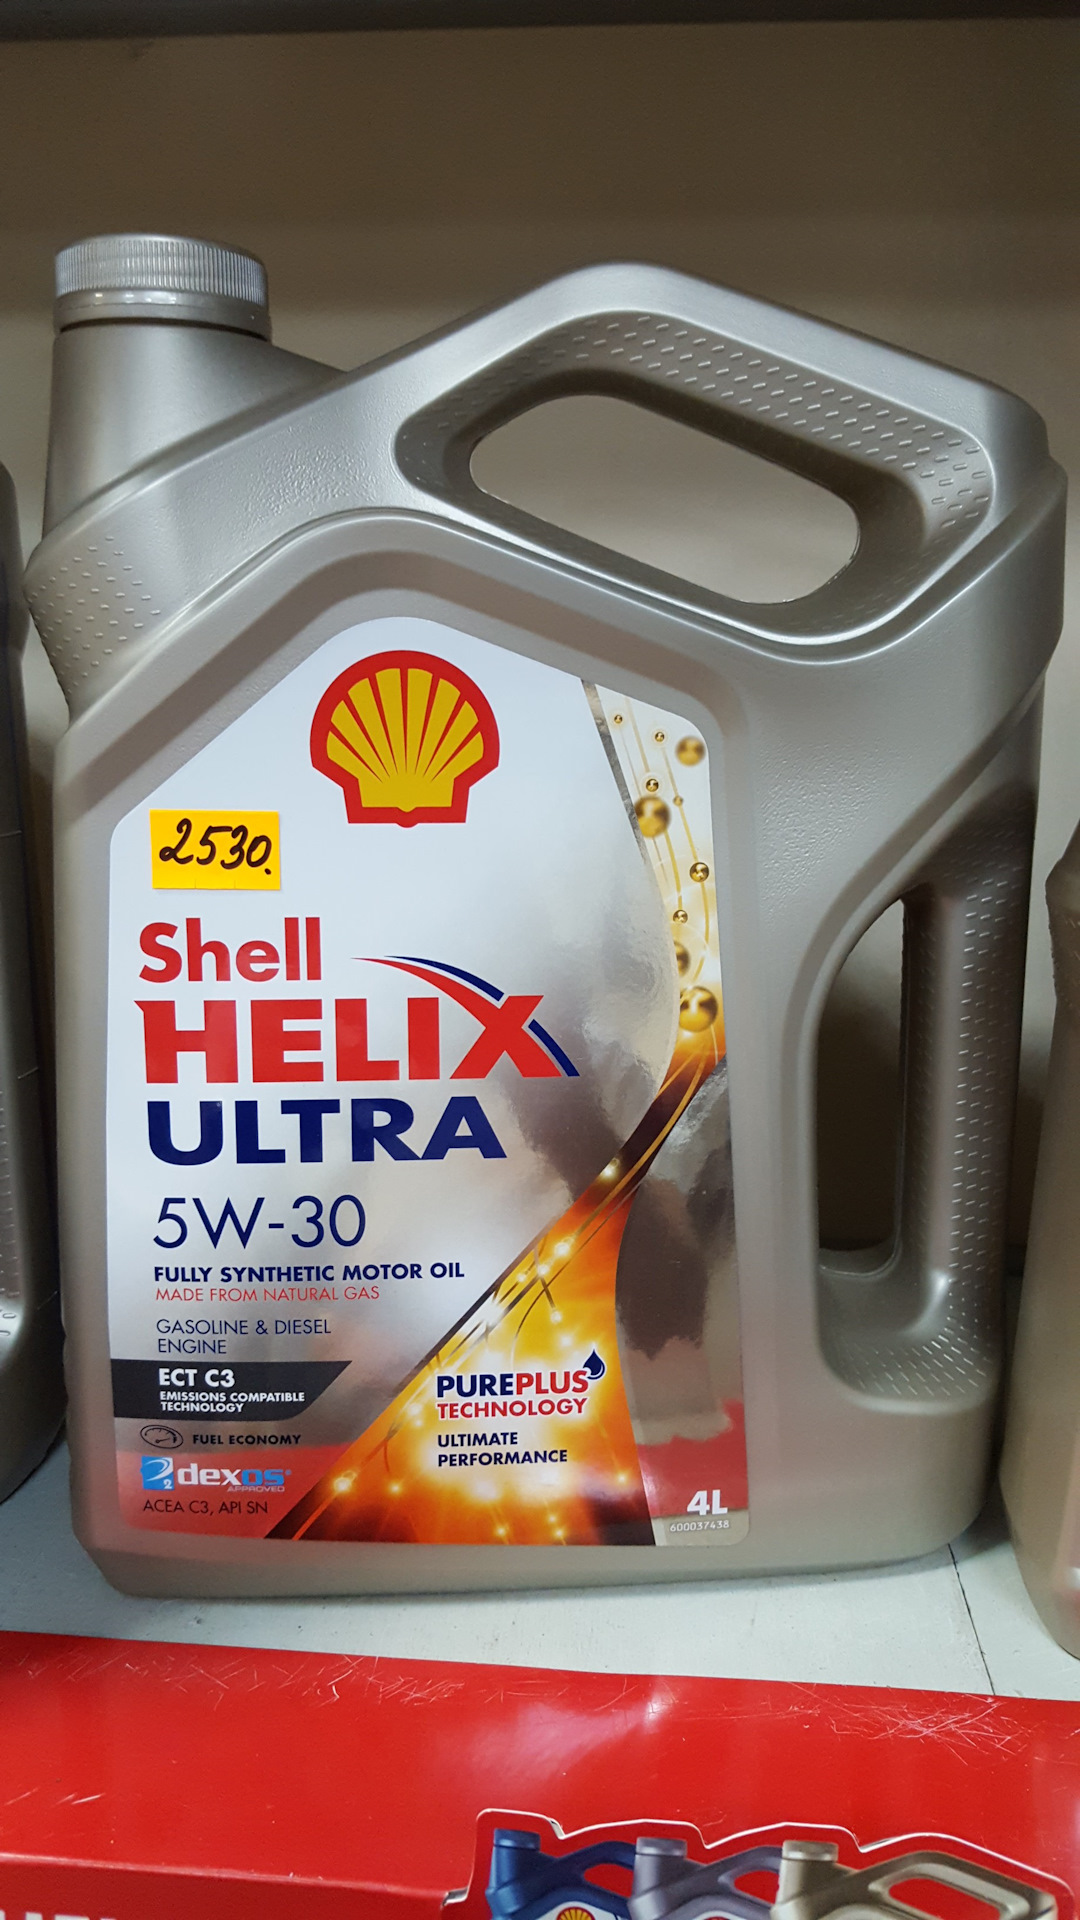 Ix35 масло в двигатель бензин 2.0. Моторное масло для Hyundai Creta 1.6. Моторное масло для Хендай Крета 1.6 5w30. Масло моторное Хендай Крета 1.6 шел Хеликс ультра. Масло моторное 5w30 синтетика для Хендай Крета 2016 года 1,6.